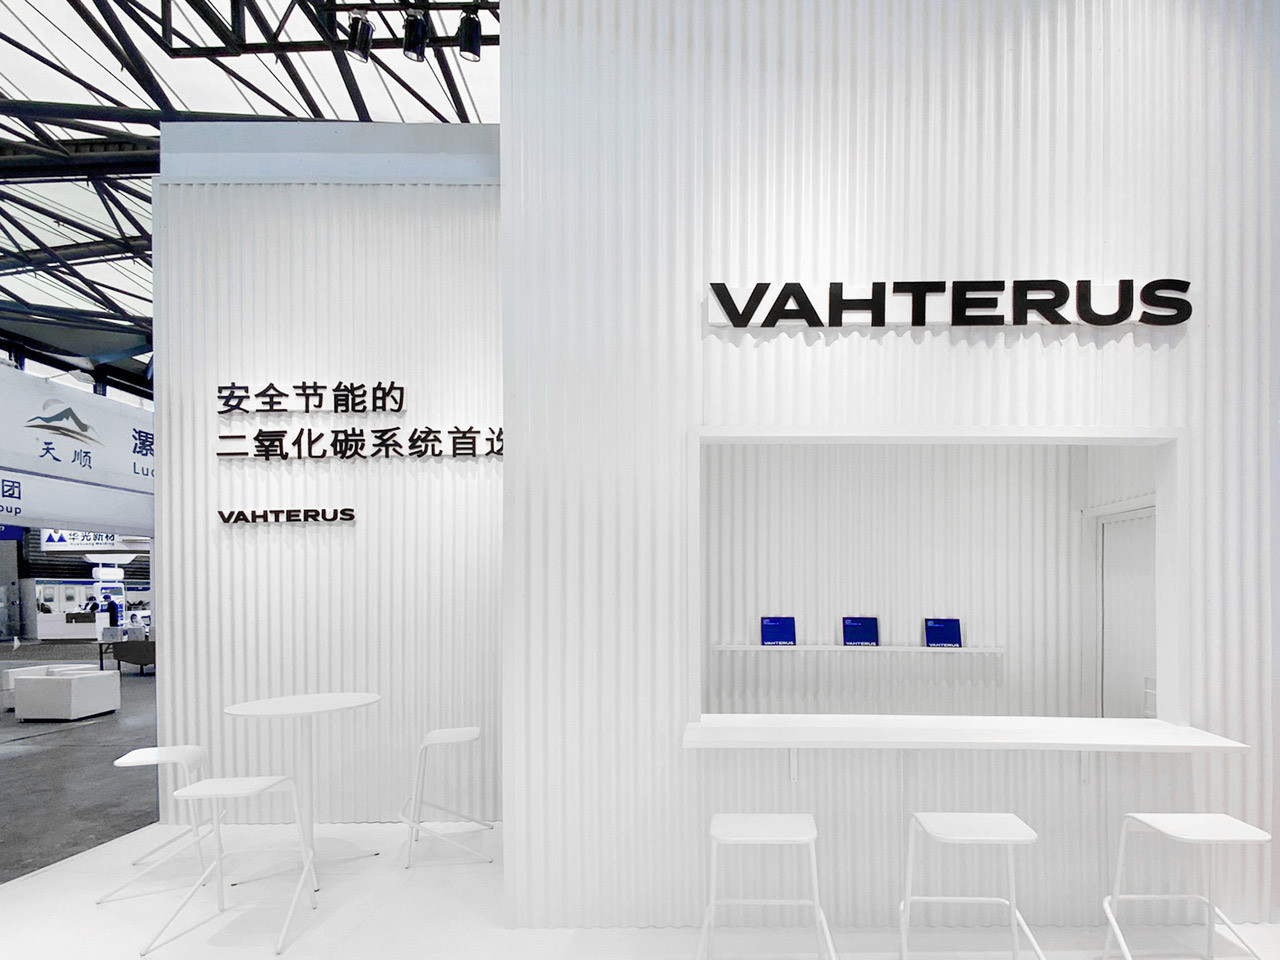 Vahterus Booth at China Refrigeration Expo